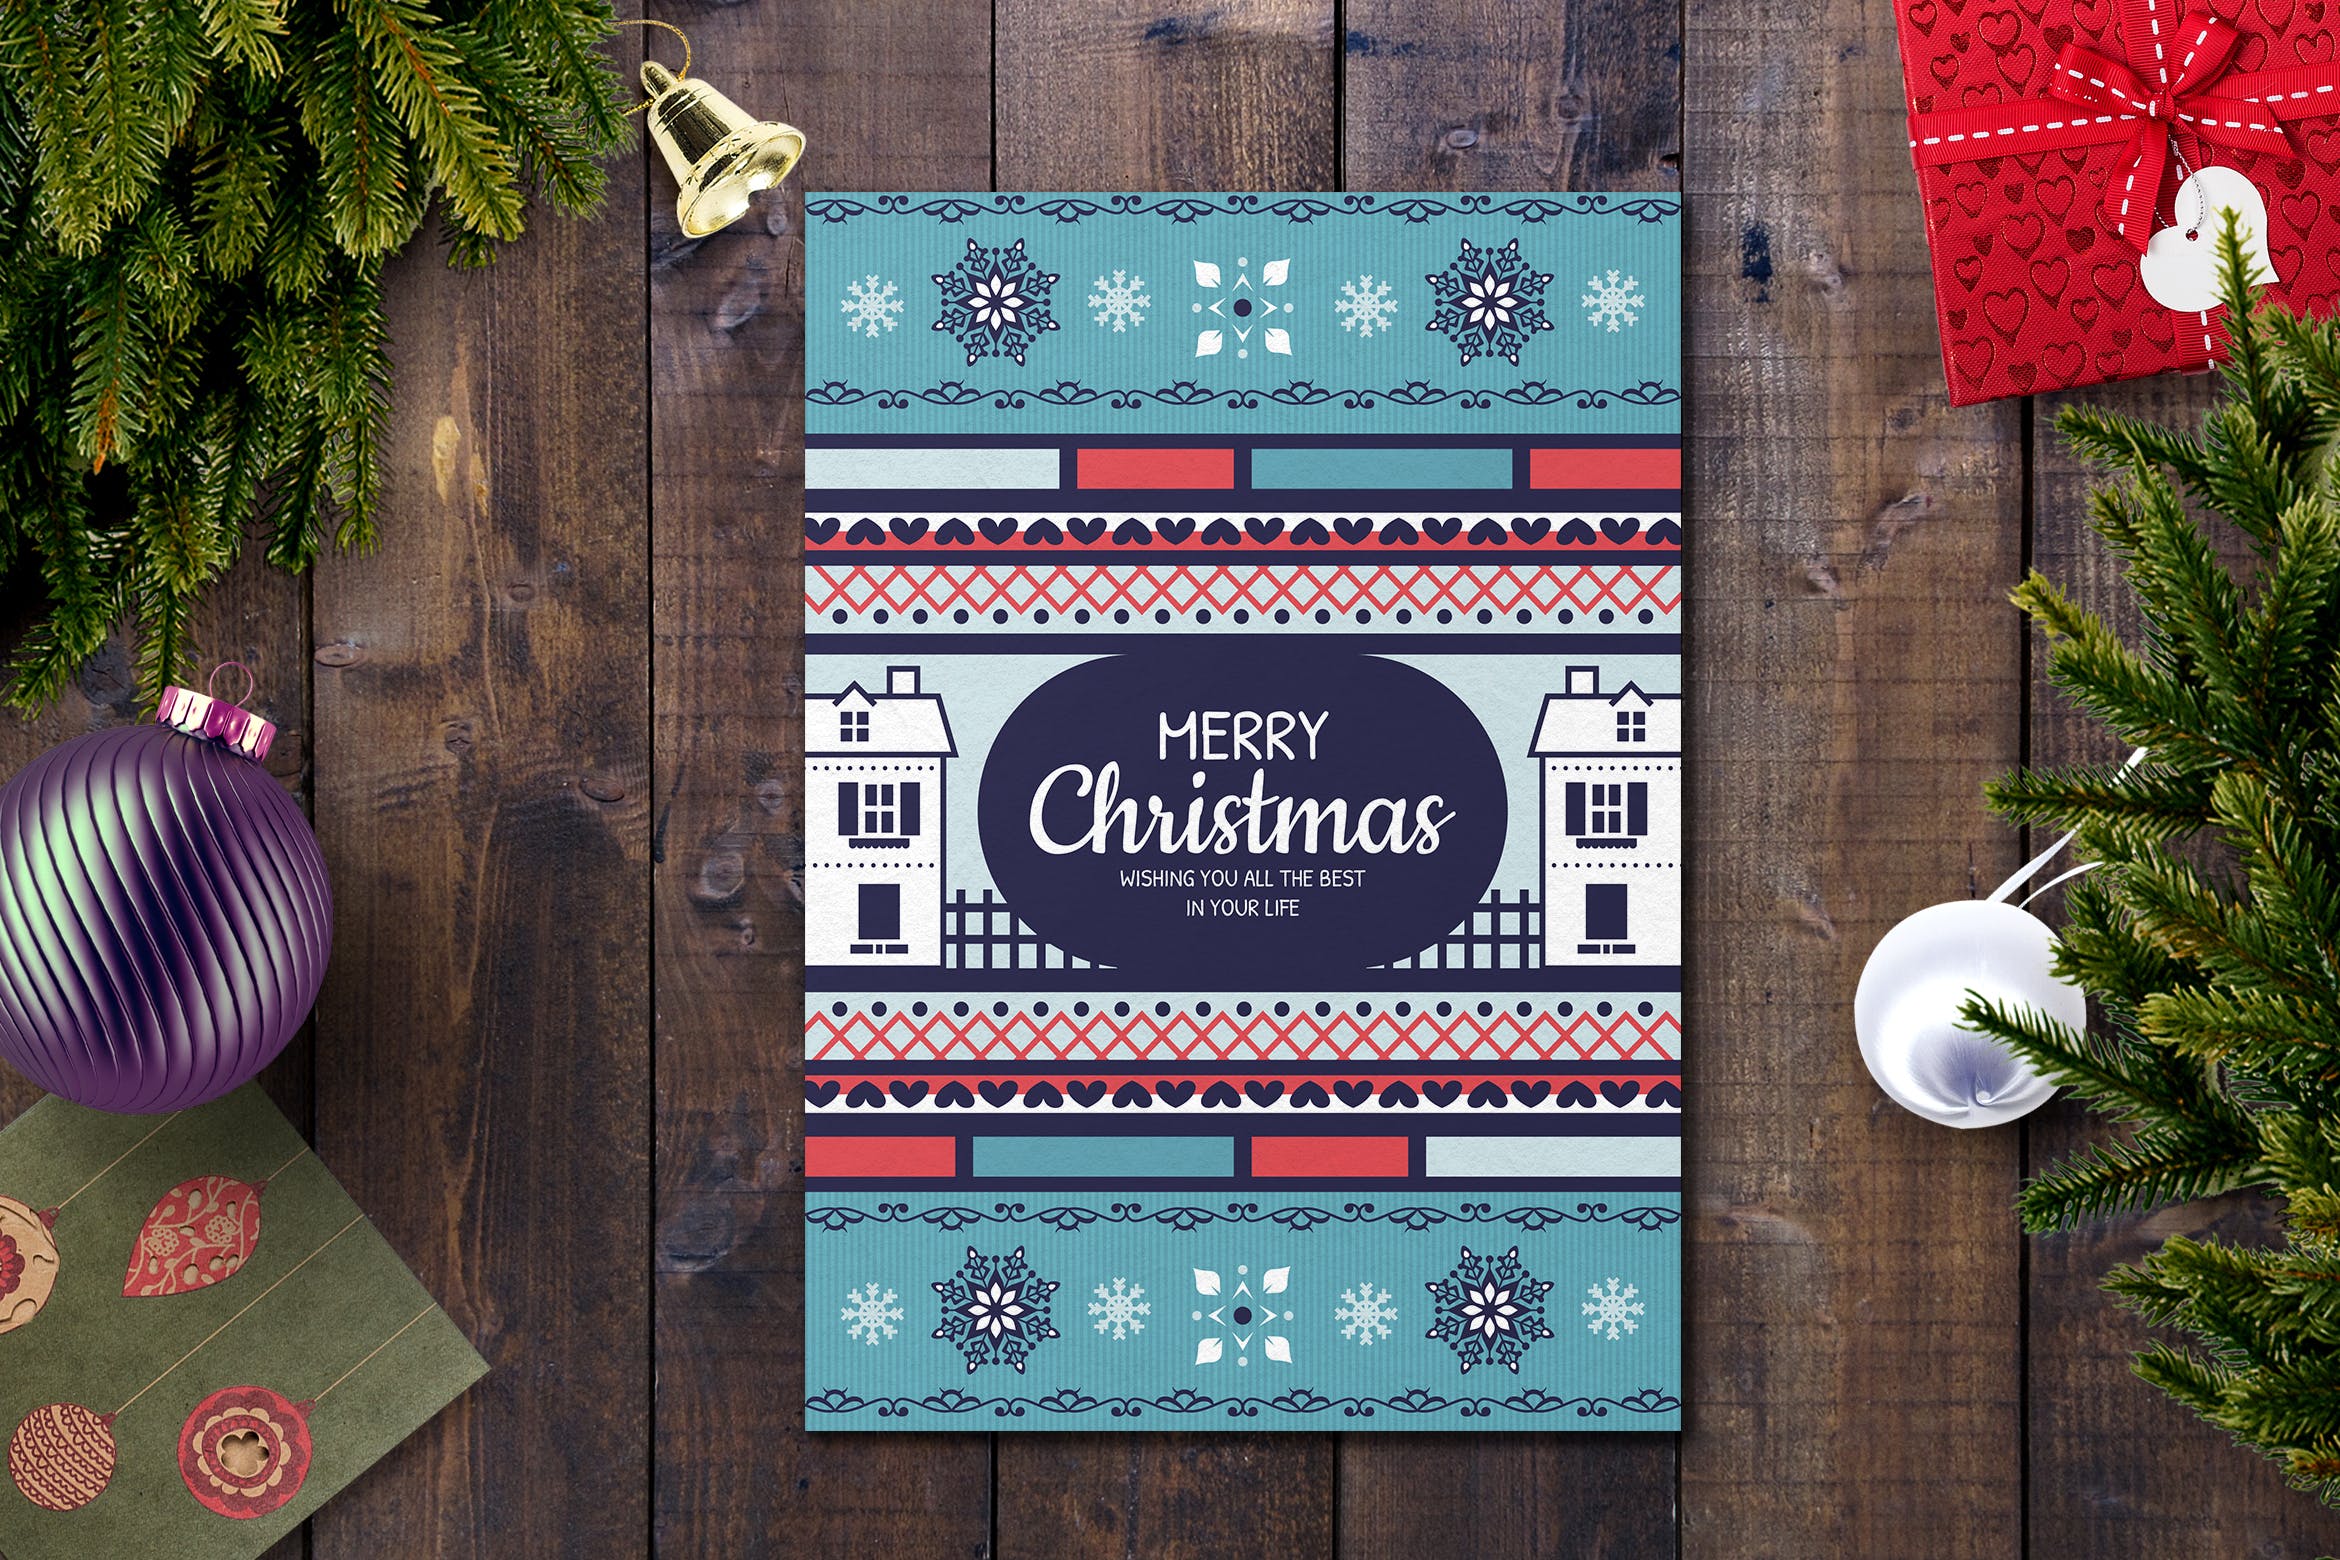 部落几何图案圣诞节贺卡设计模板 Christmas Card Template插图